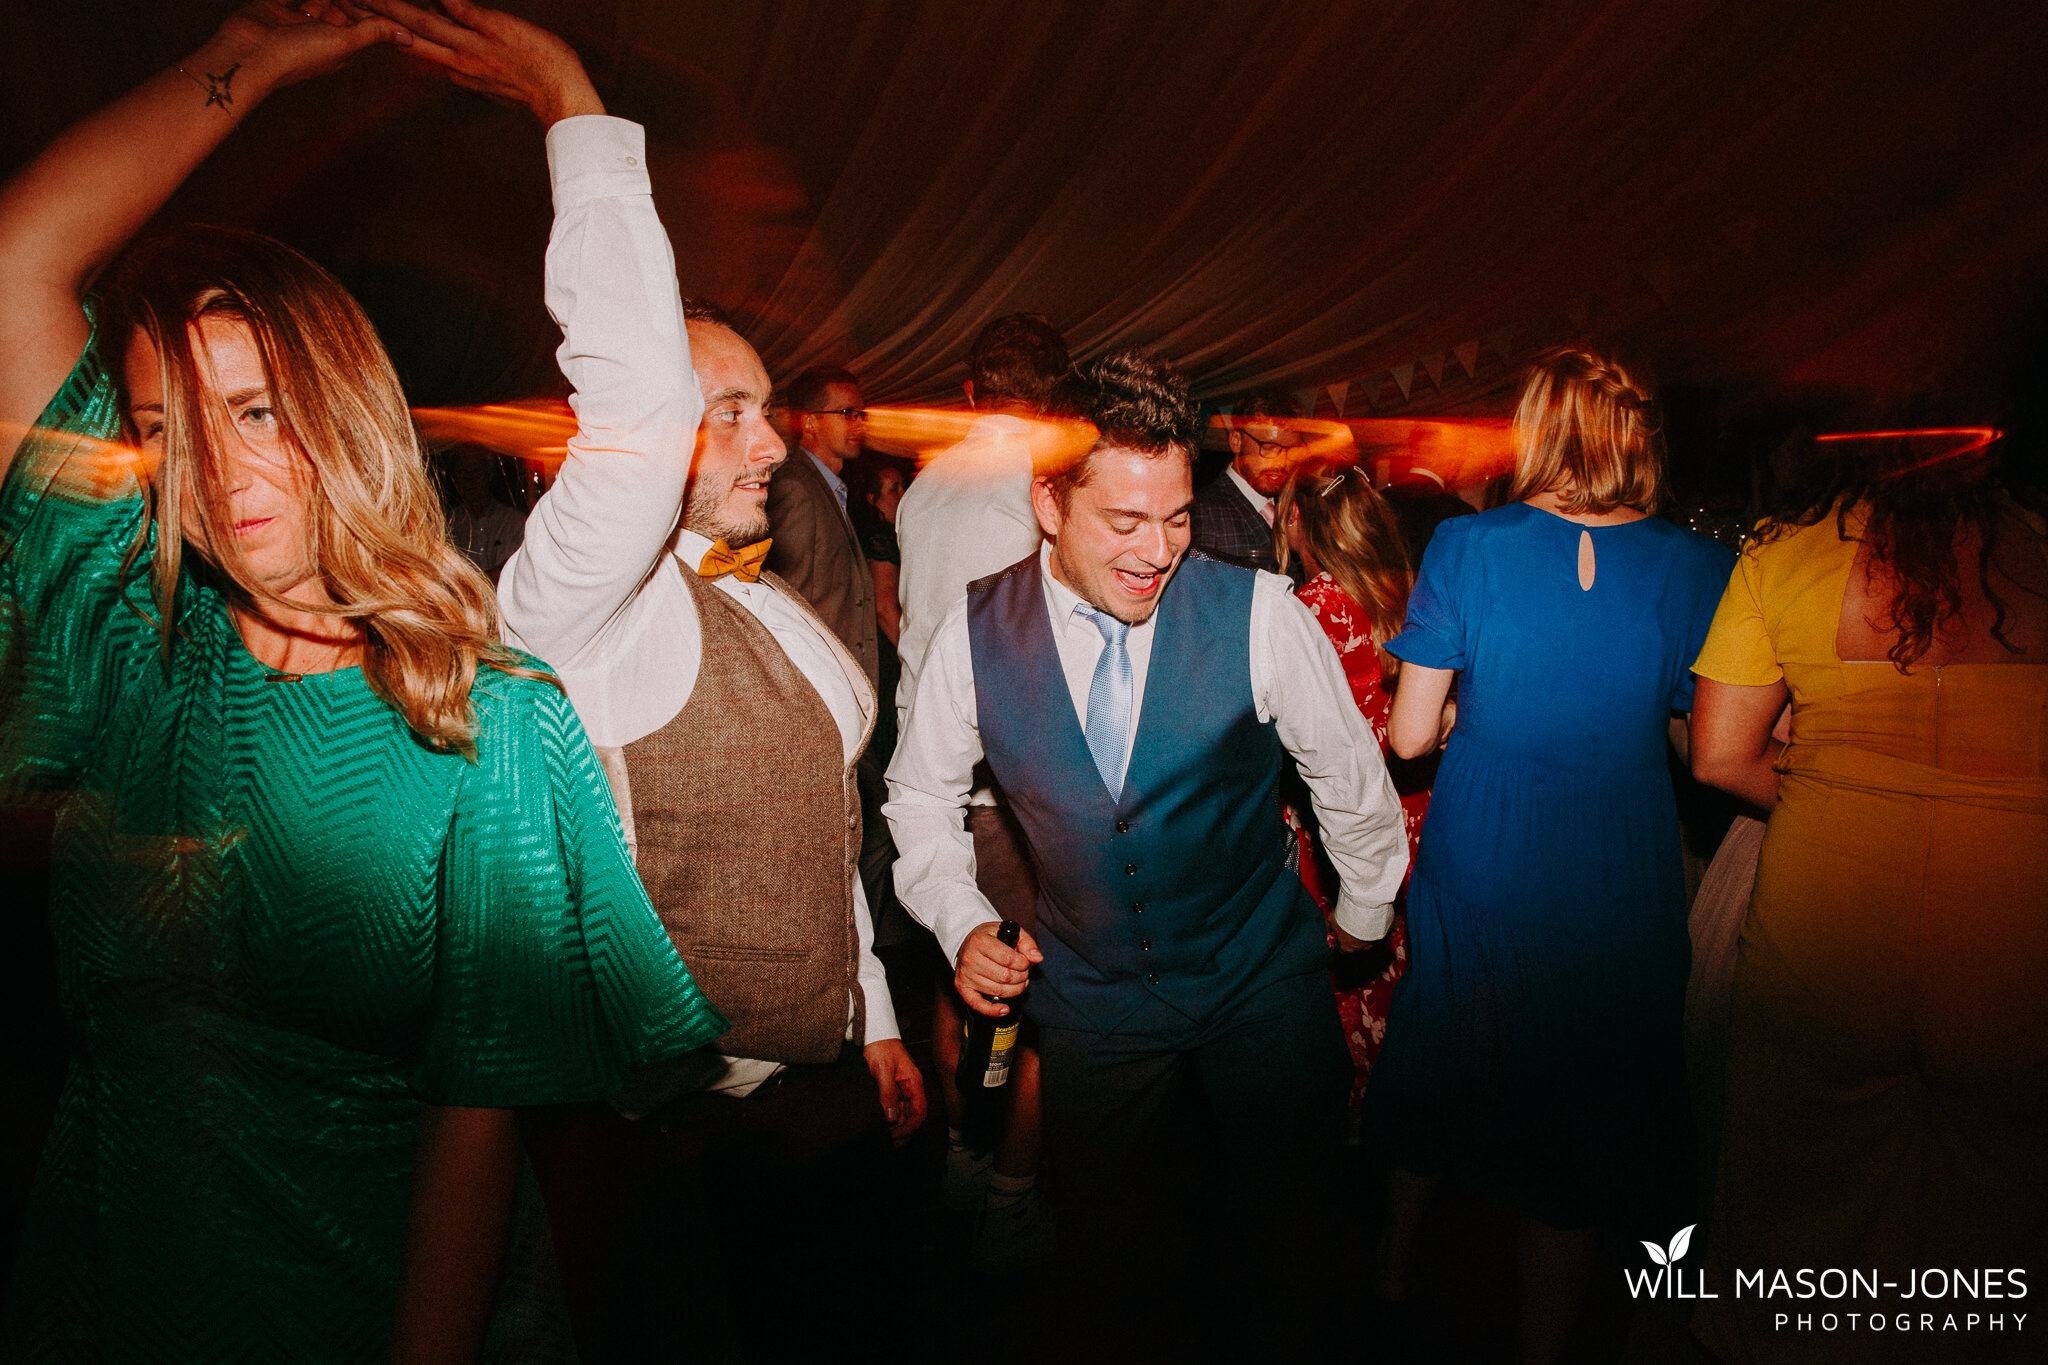  colourful energetic drunk funny swansea wedding photography dancefloor perriswood 